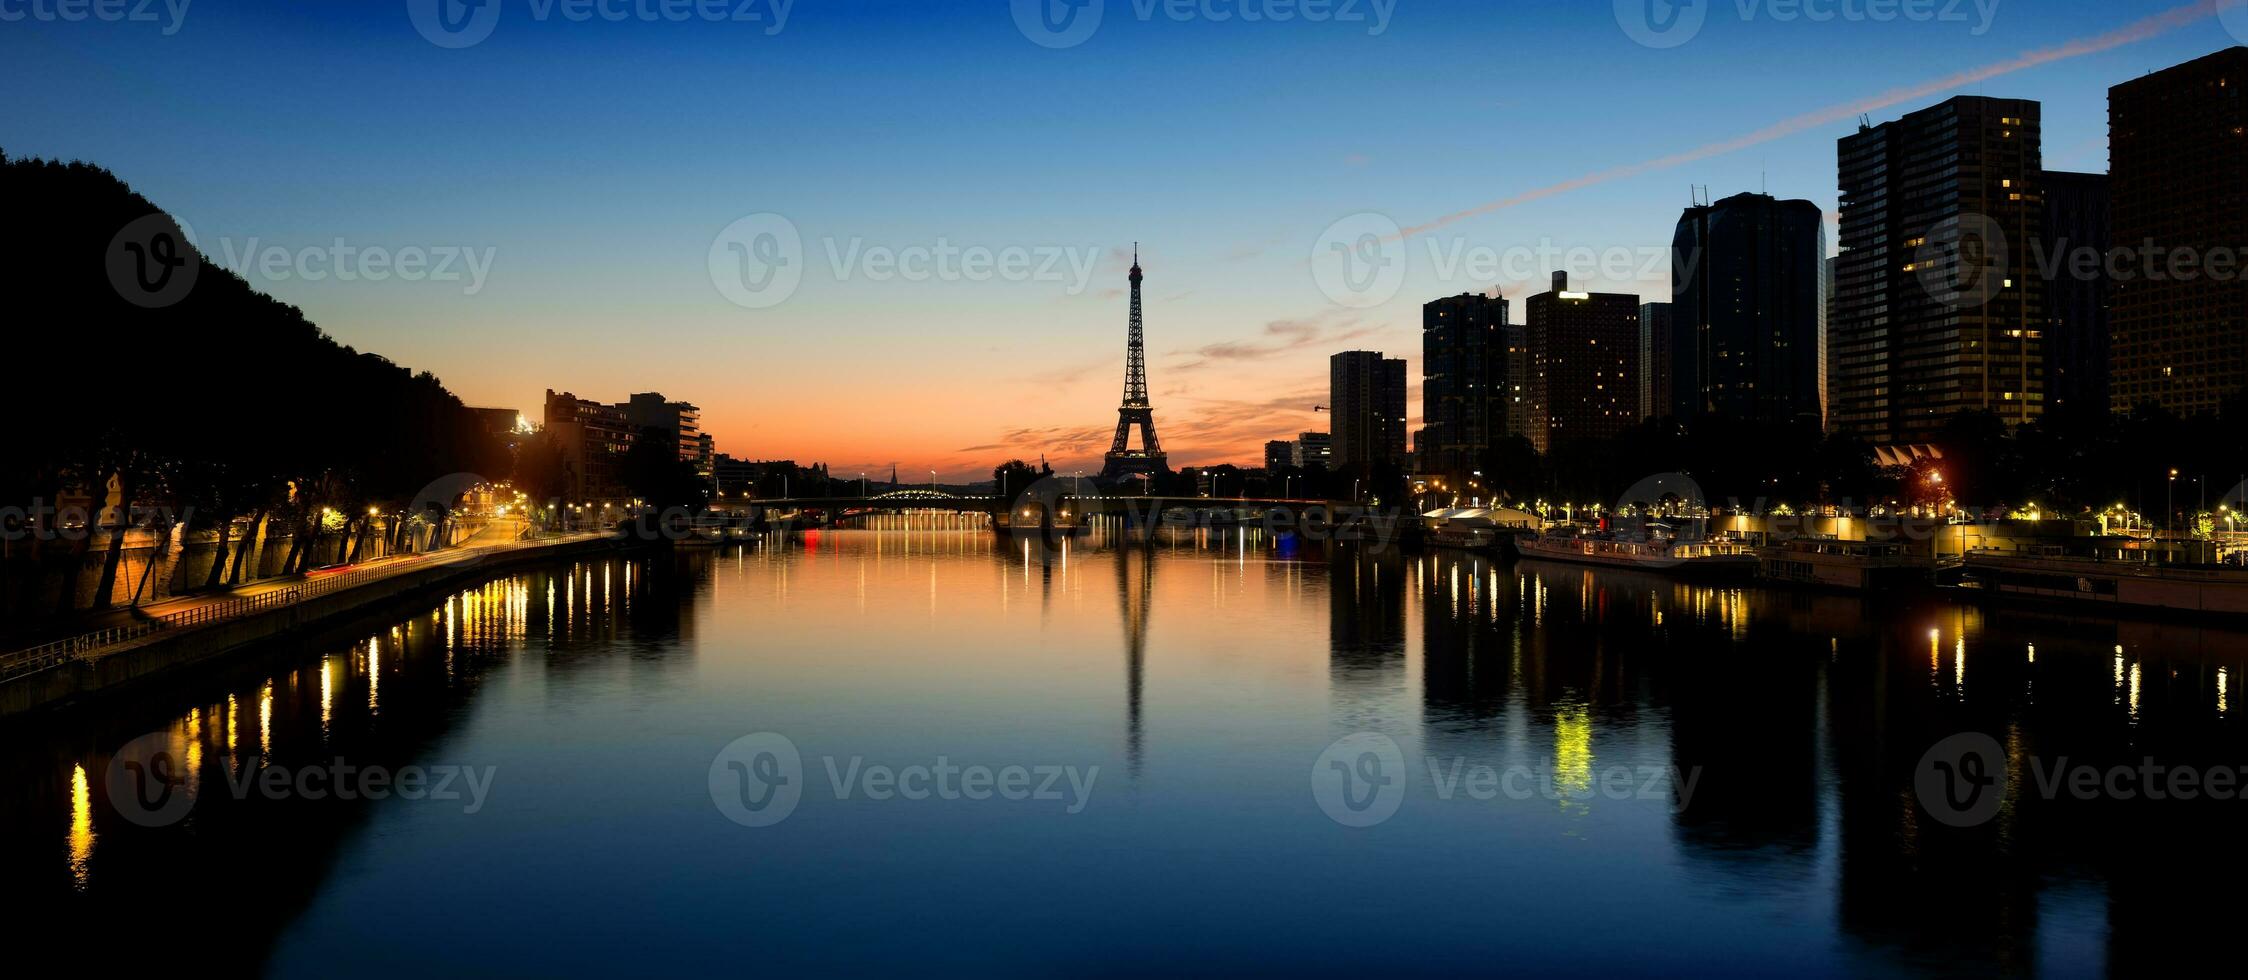 parisian morgon- landskap foto